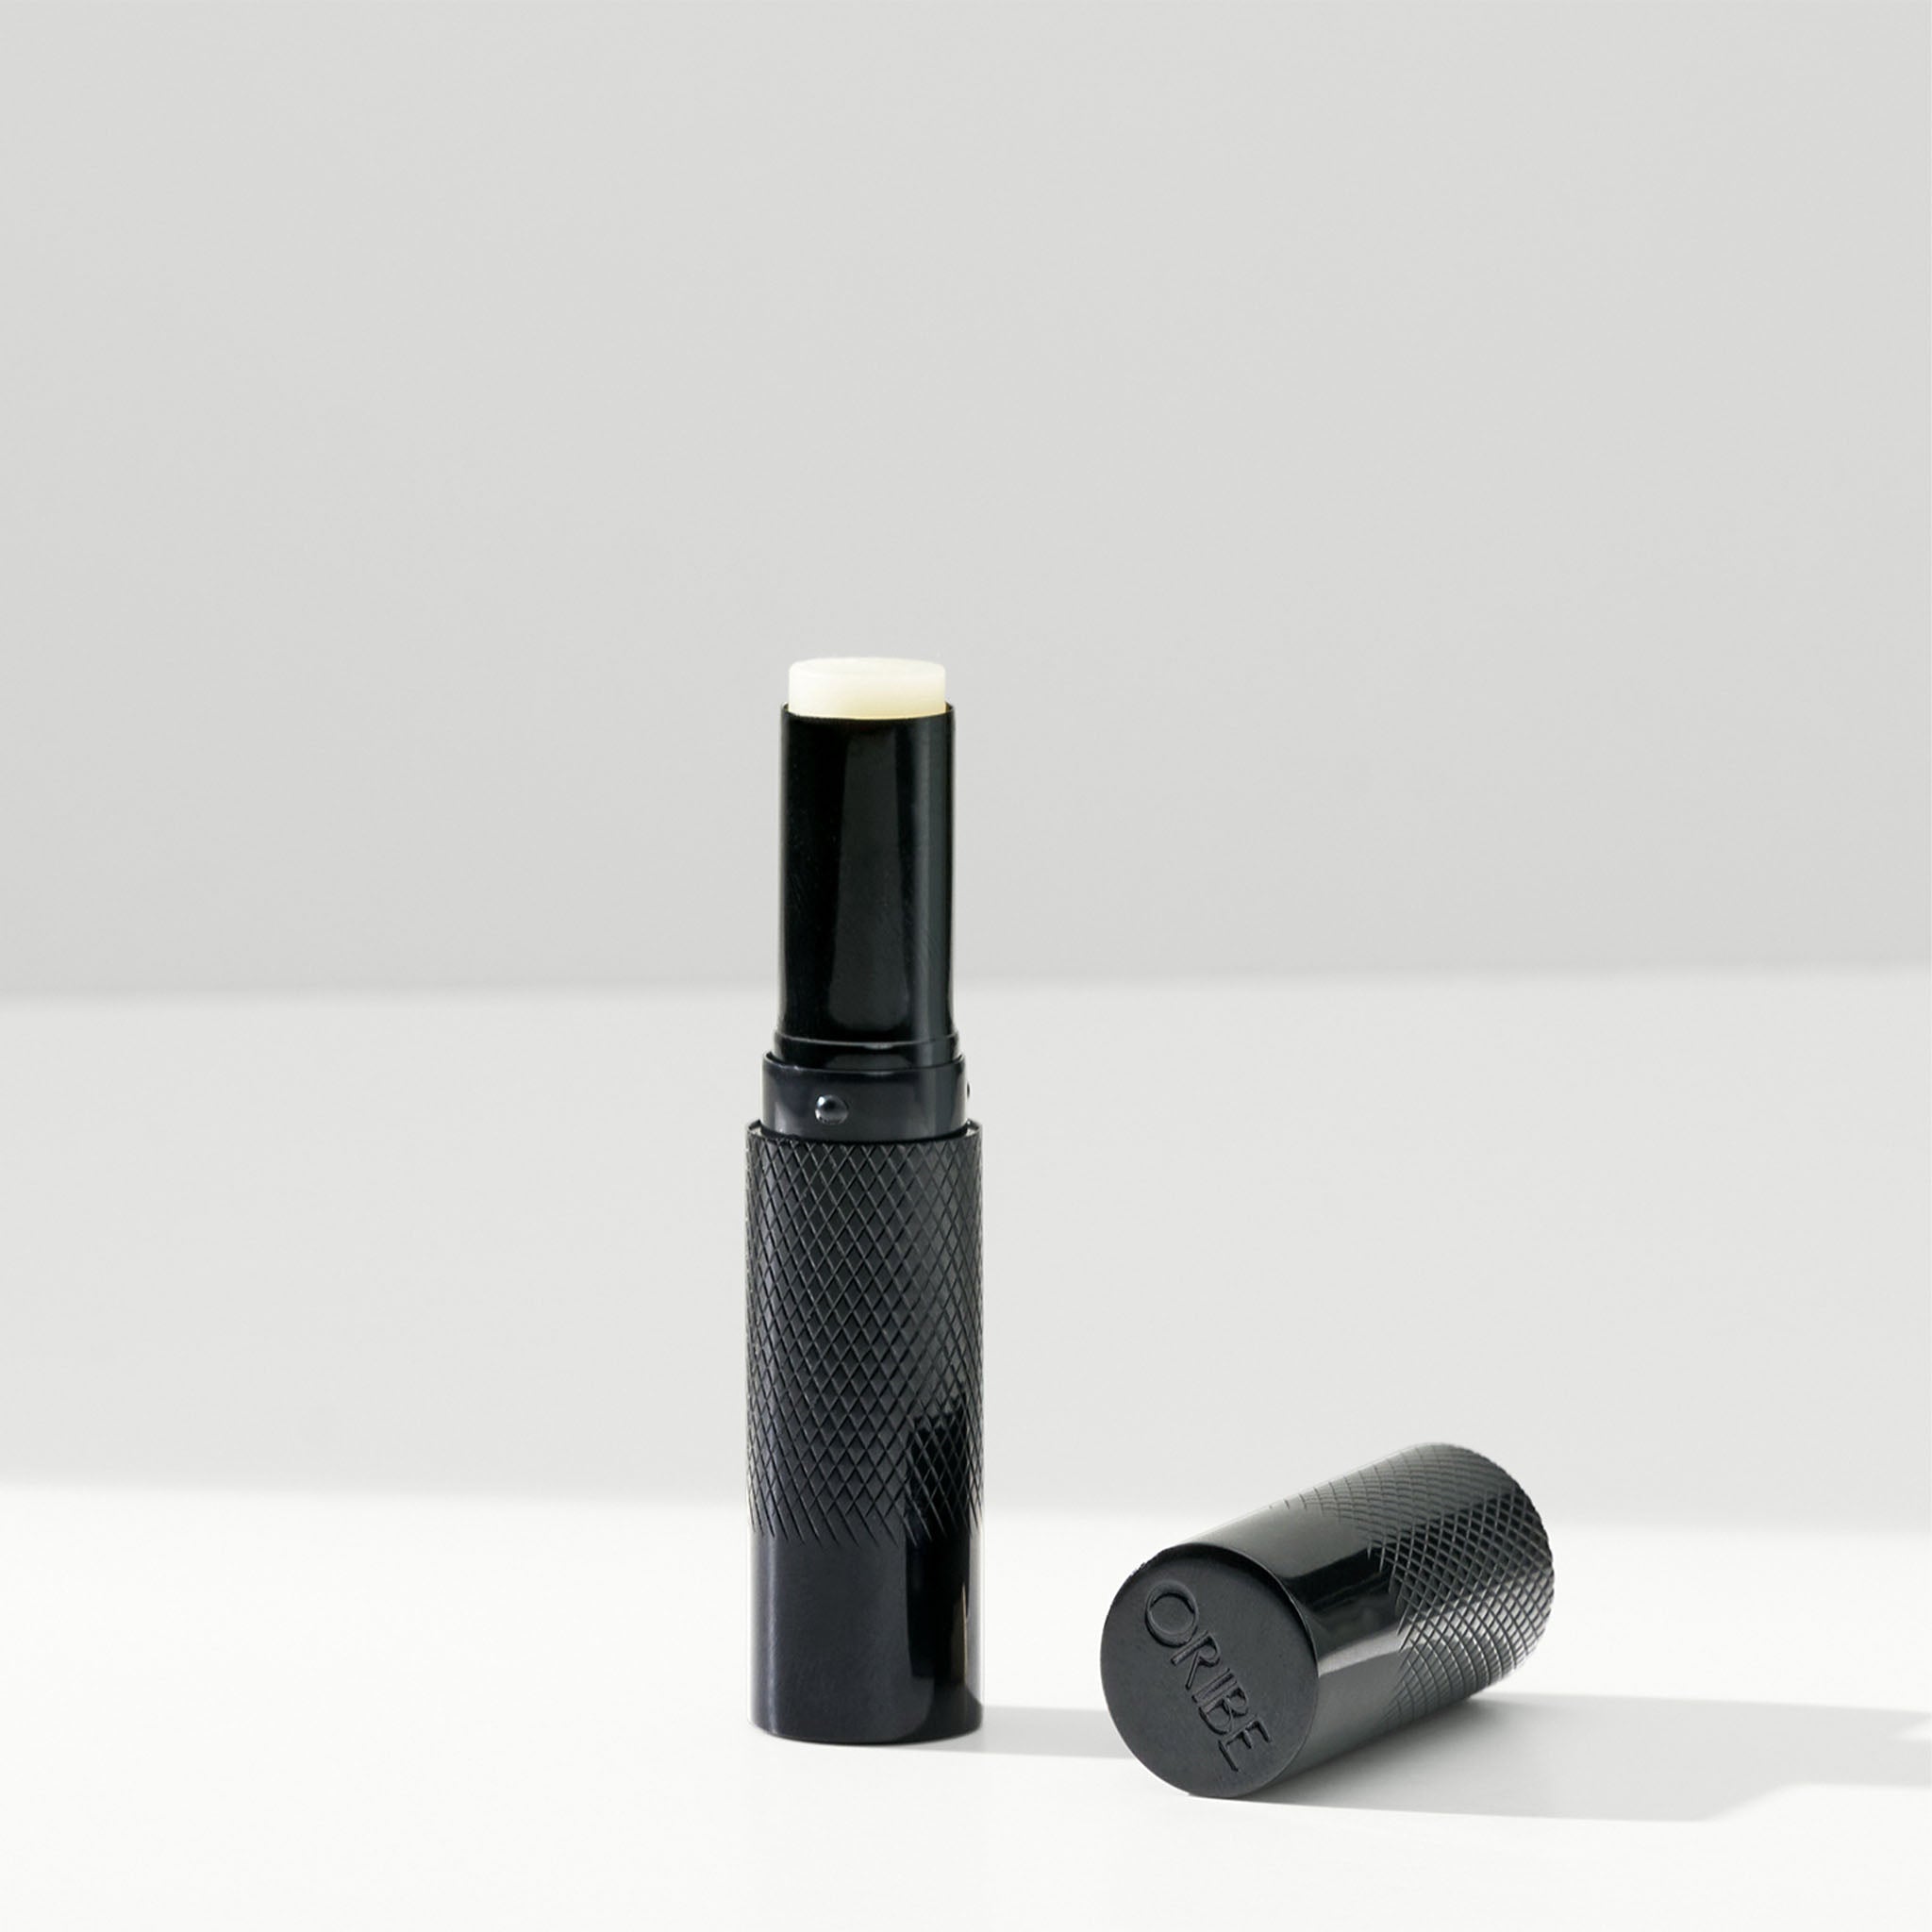 Oribe. Traitement Nourrissant Pour les Lèvres - 2.5 g - Concept C. Shop